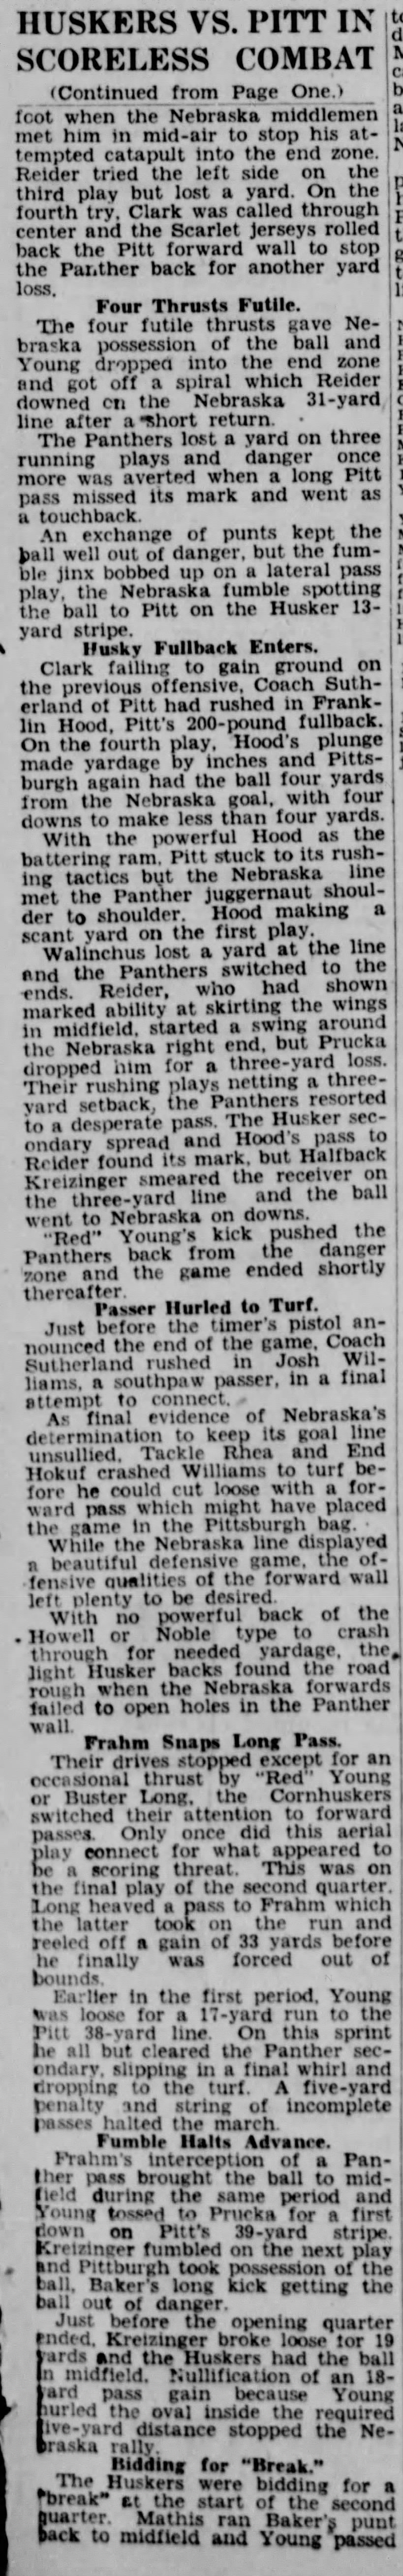 1930 Nebraska-Pitt football, part 3